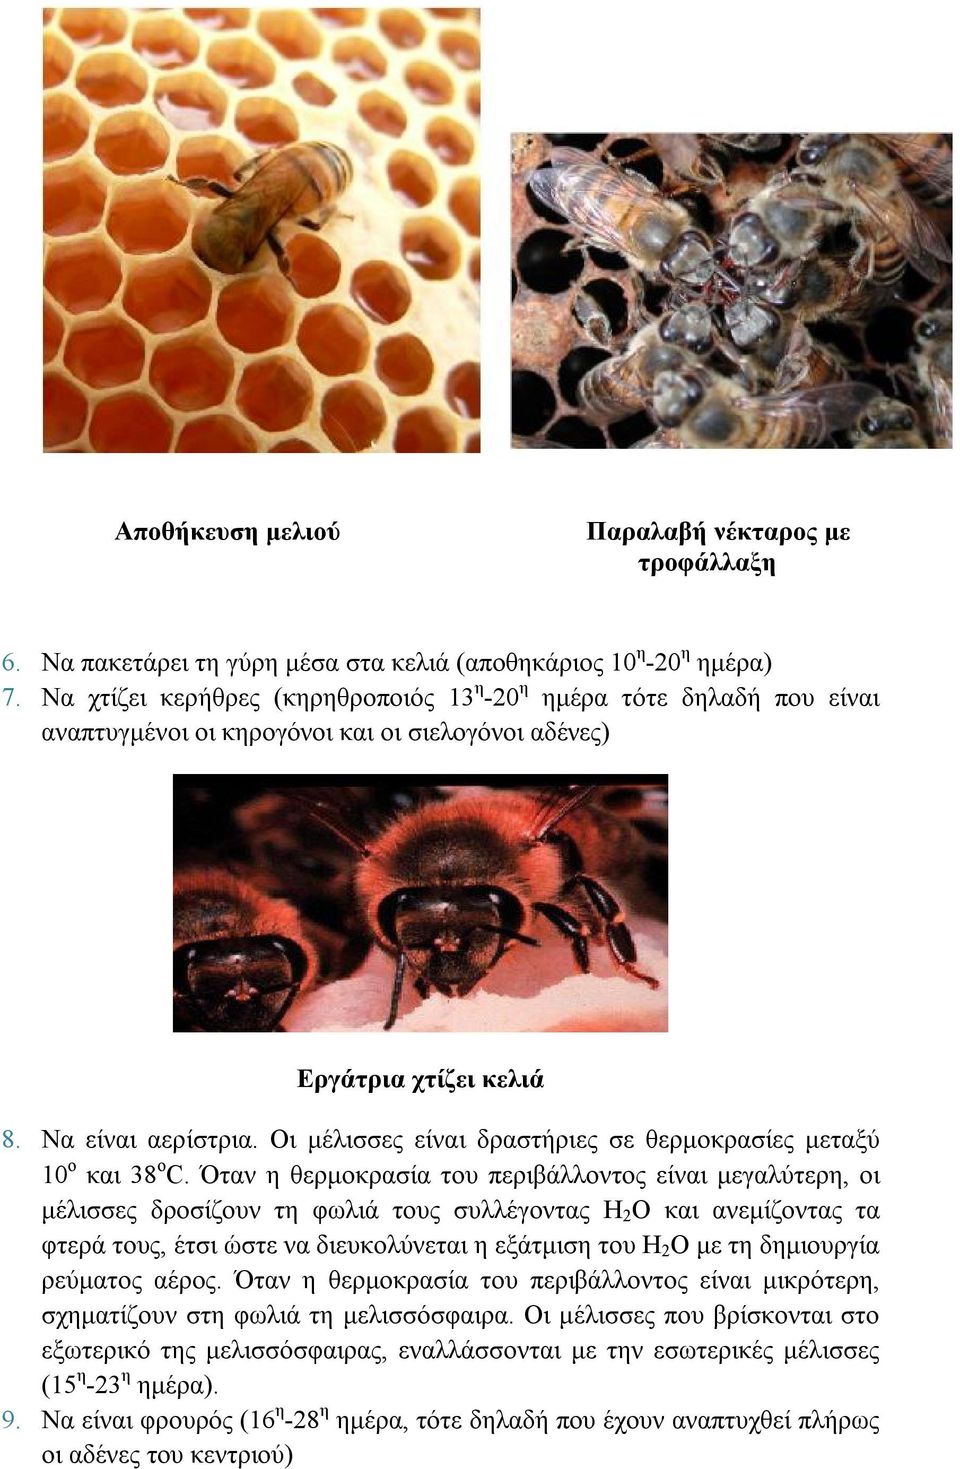 Οι μέλισσες είναι δραστήριες σε θερμοκρασίες μεταξύ 10 ο και 38 ο C.